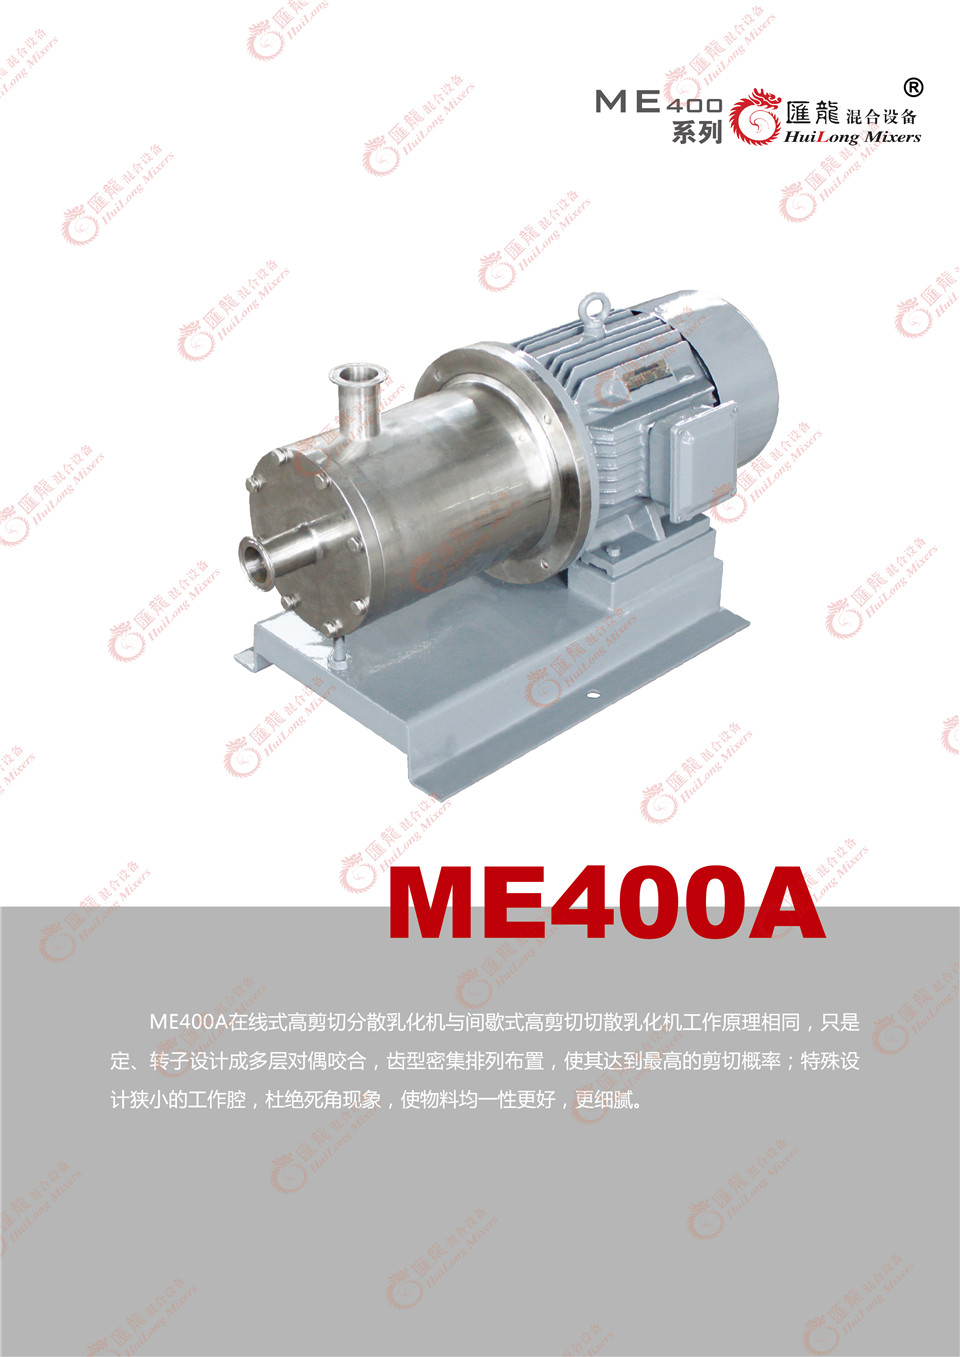 “ME400C-1型乳化机”/